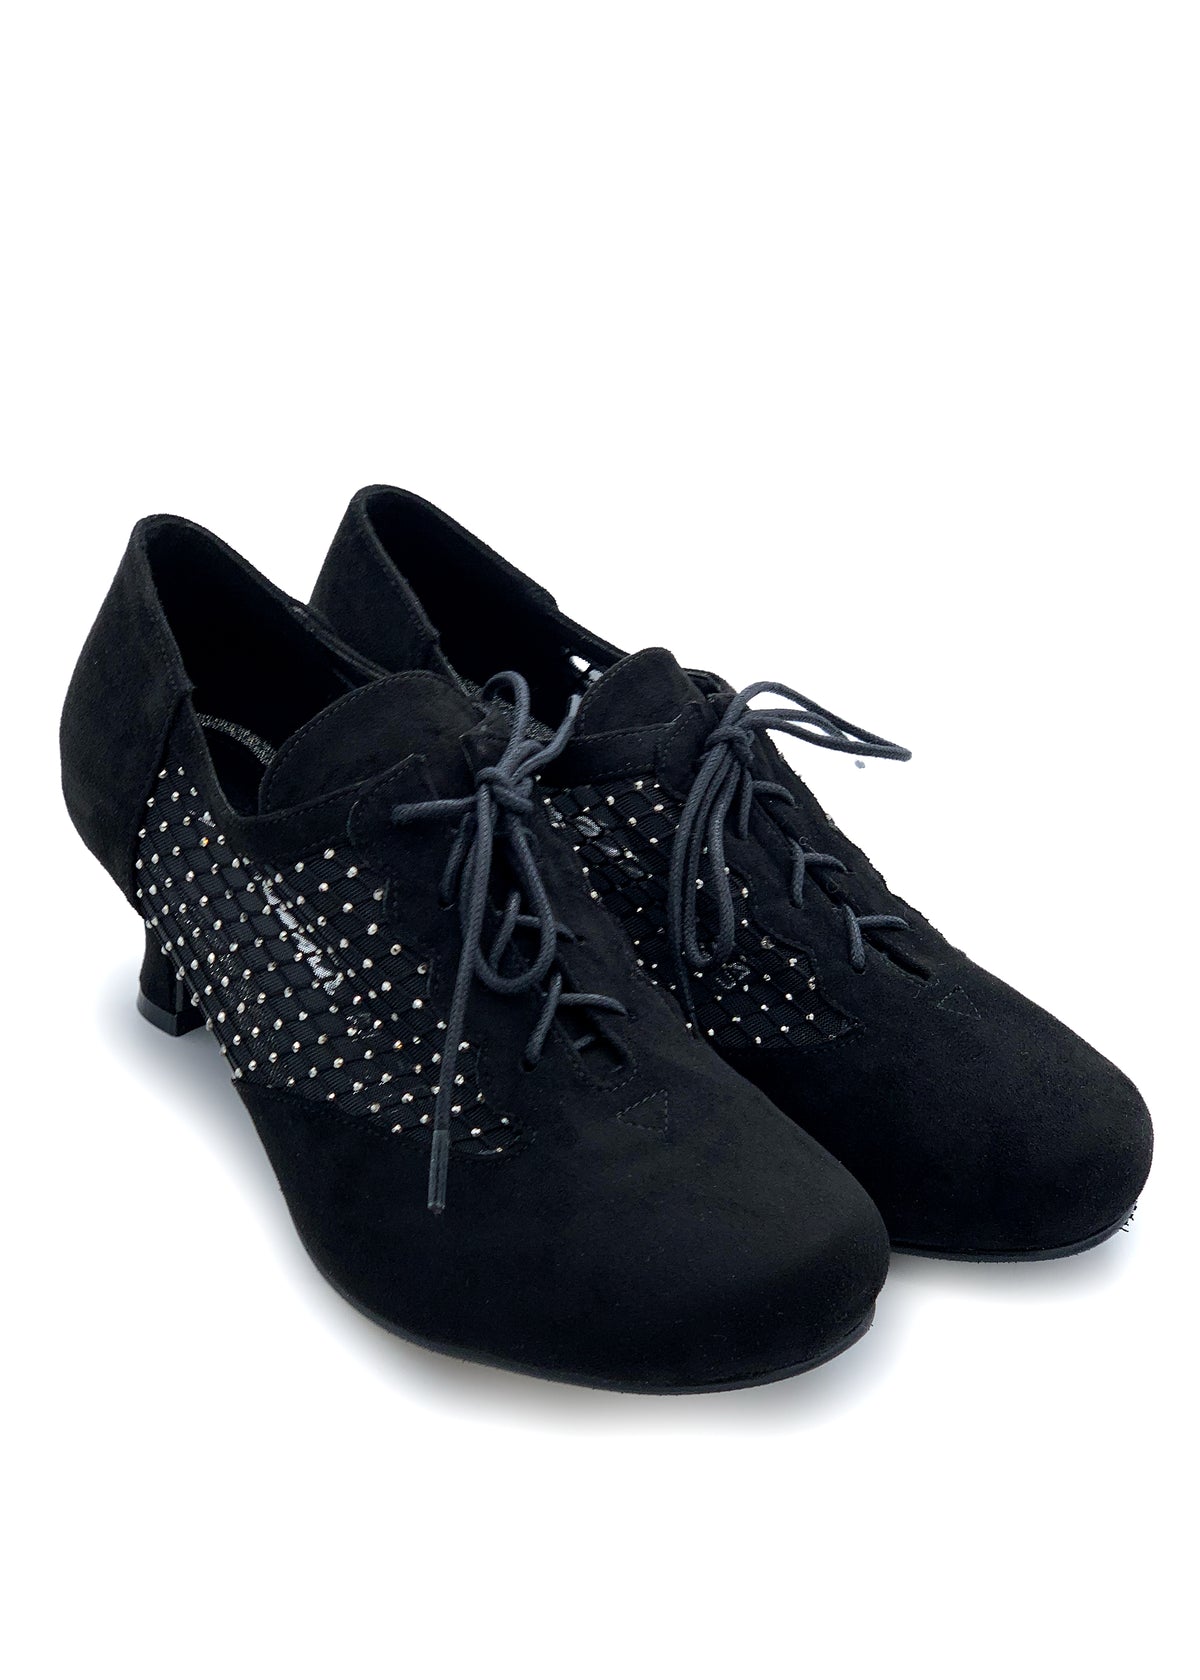 Party Walking skor - svart tyg, diamantnät på sidorna, bred spets